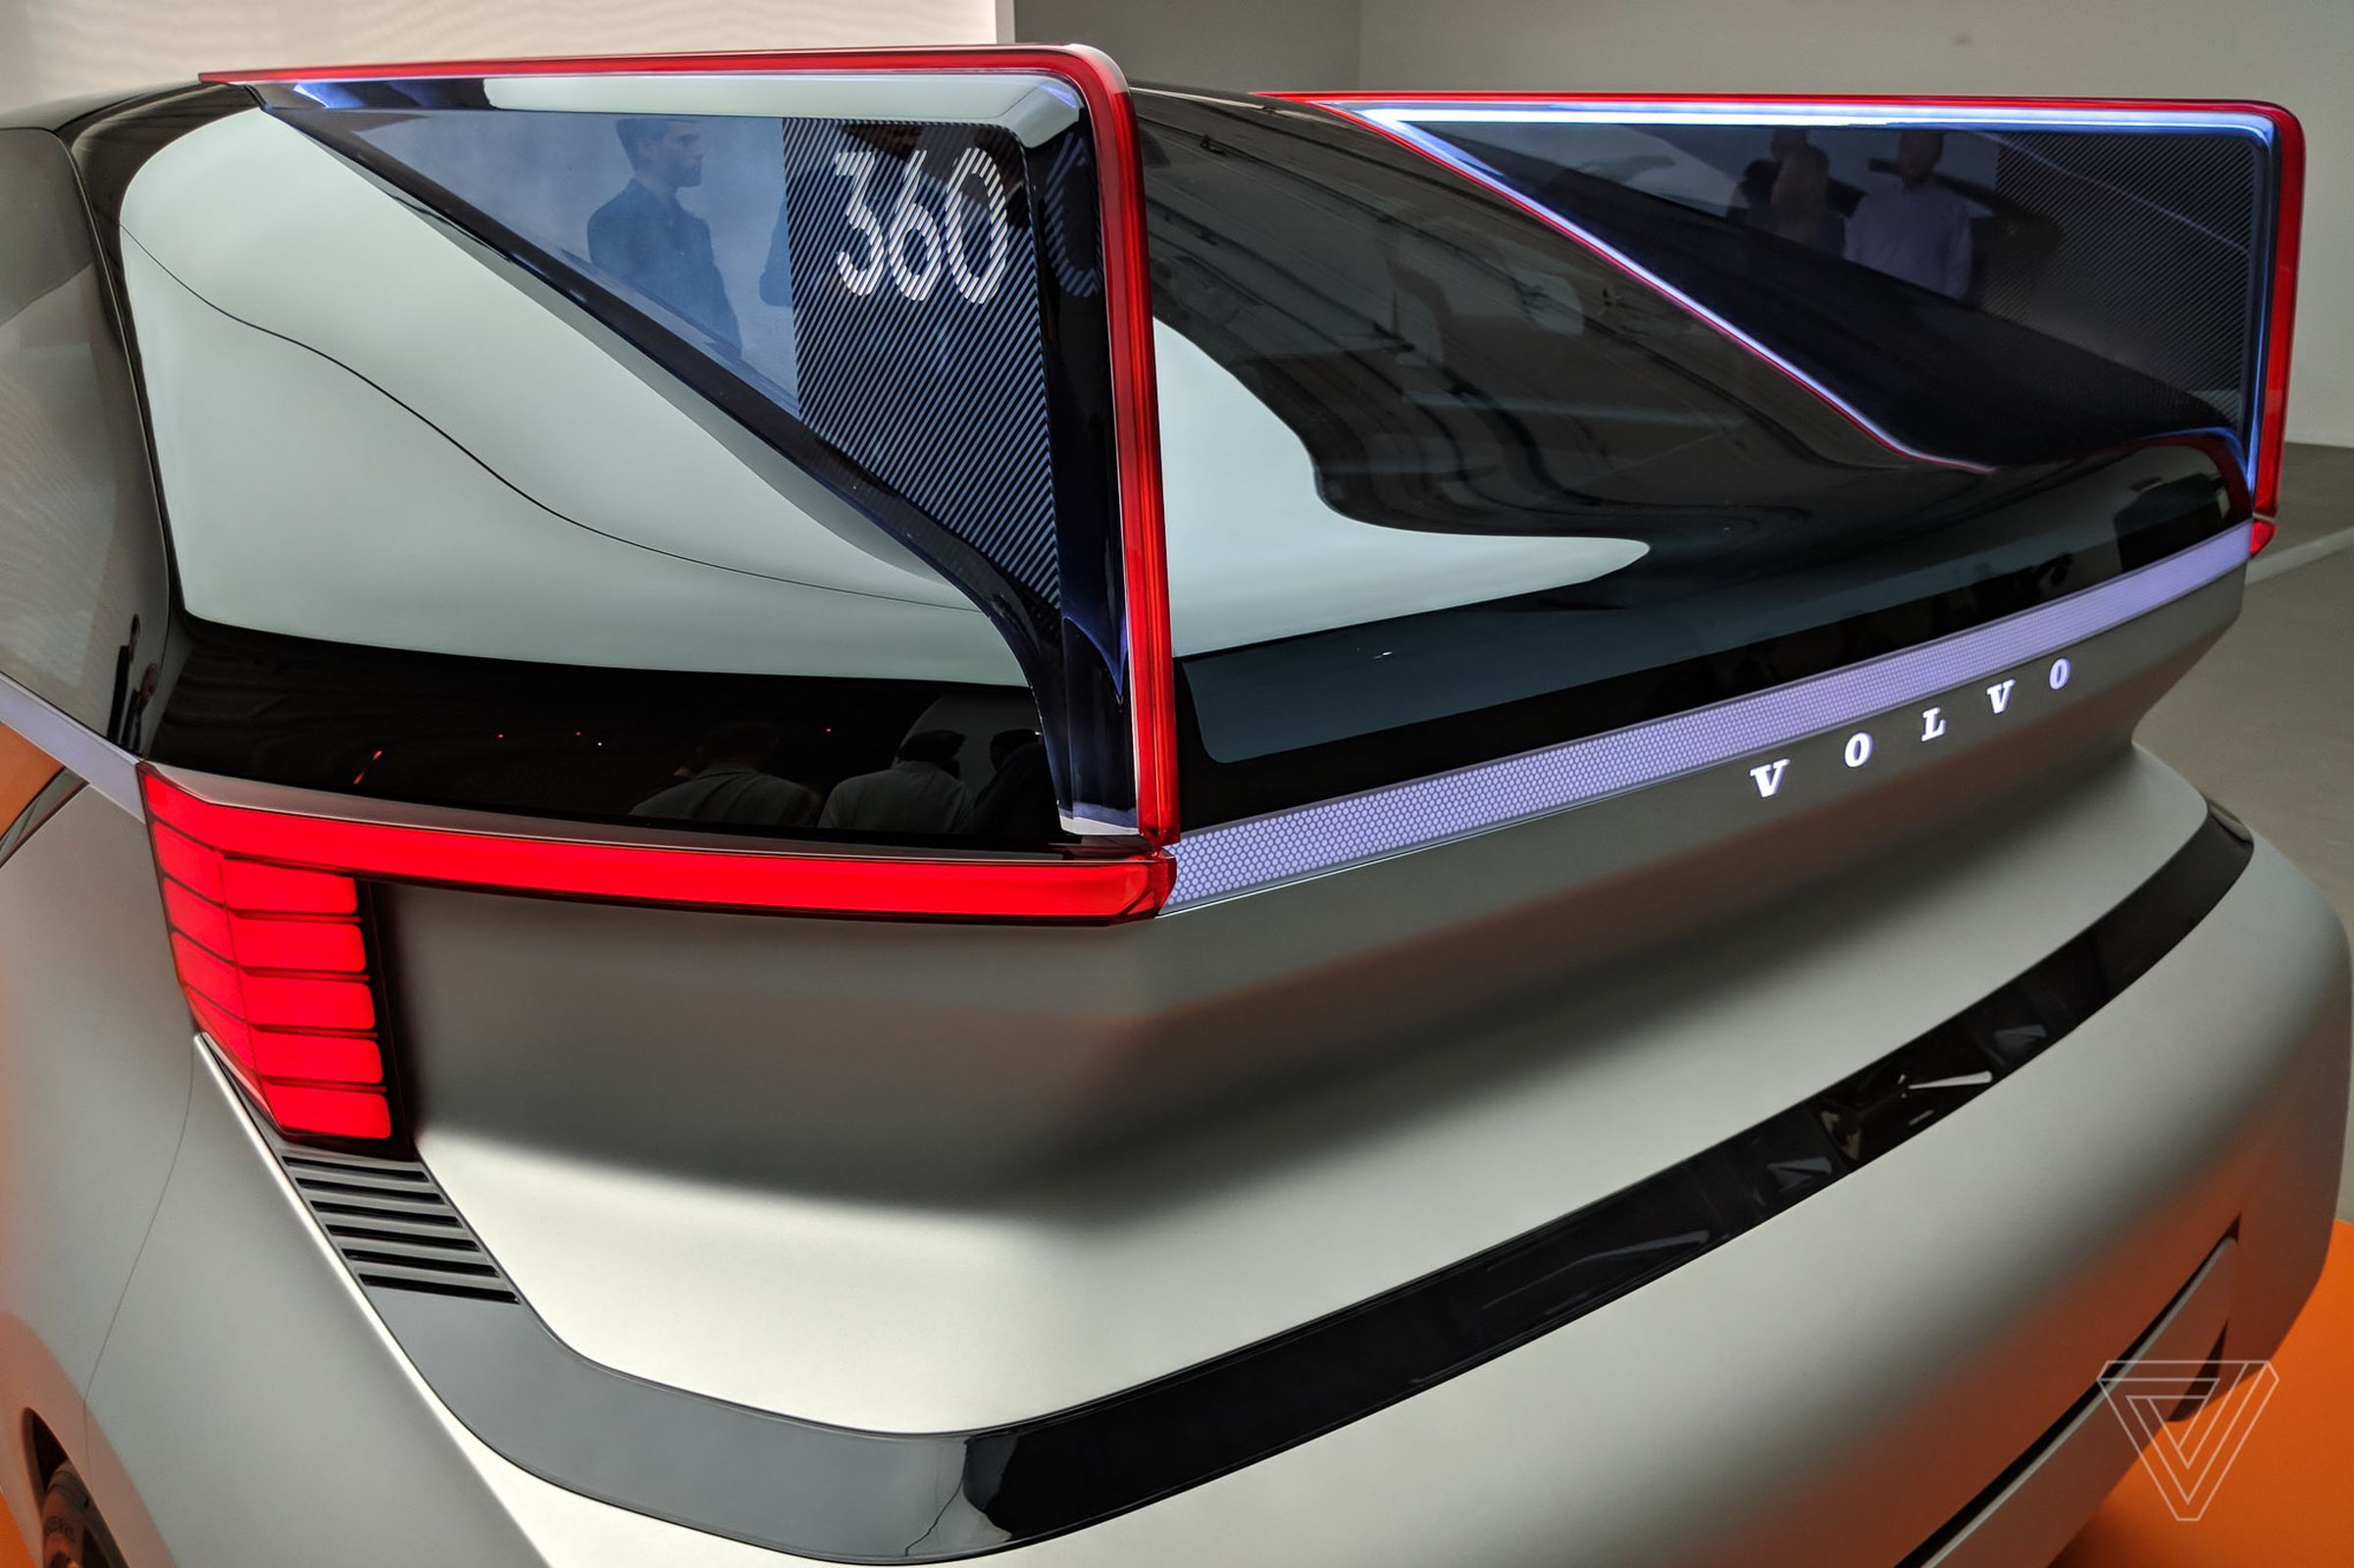 Volvo 360c concept car